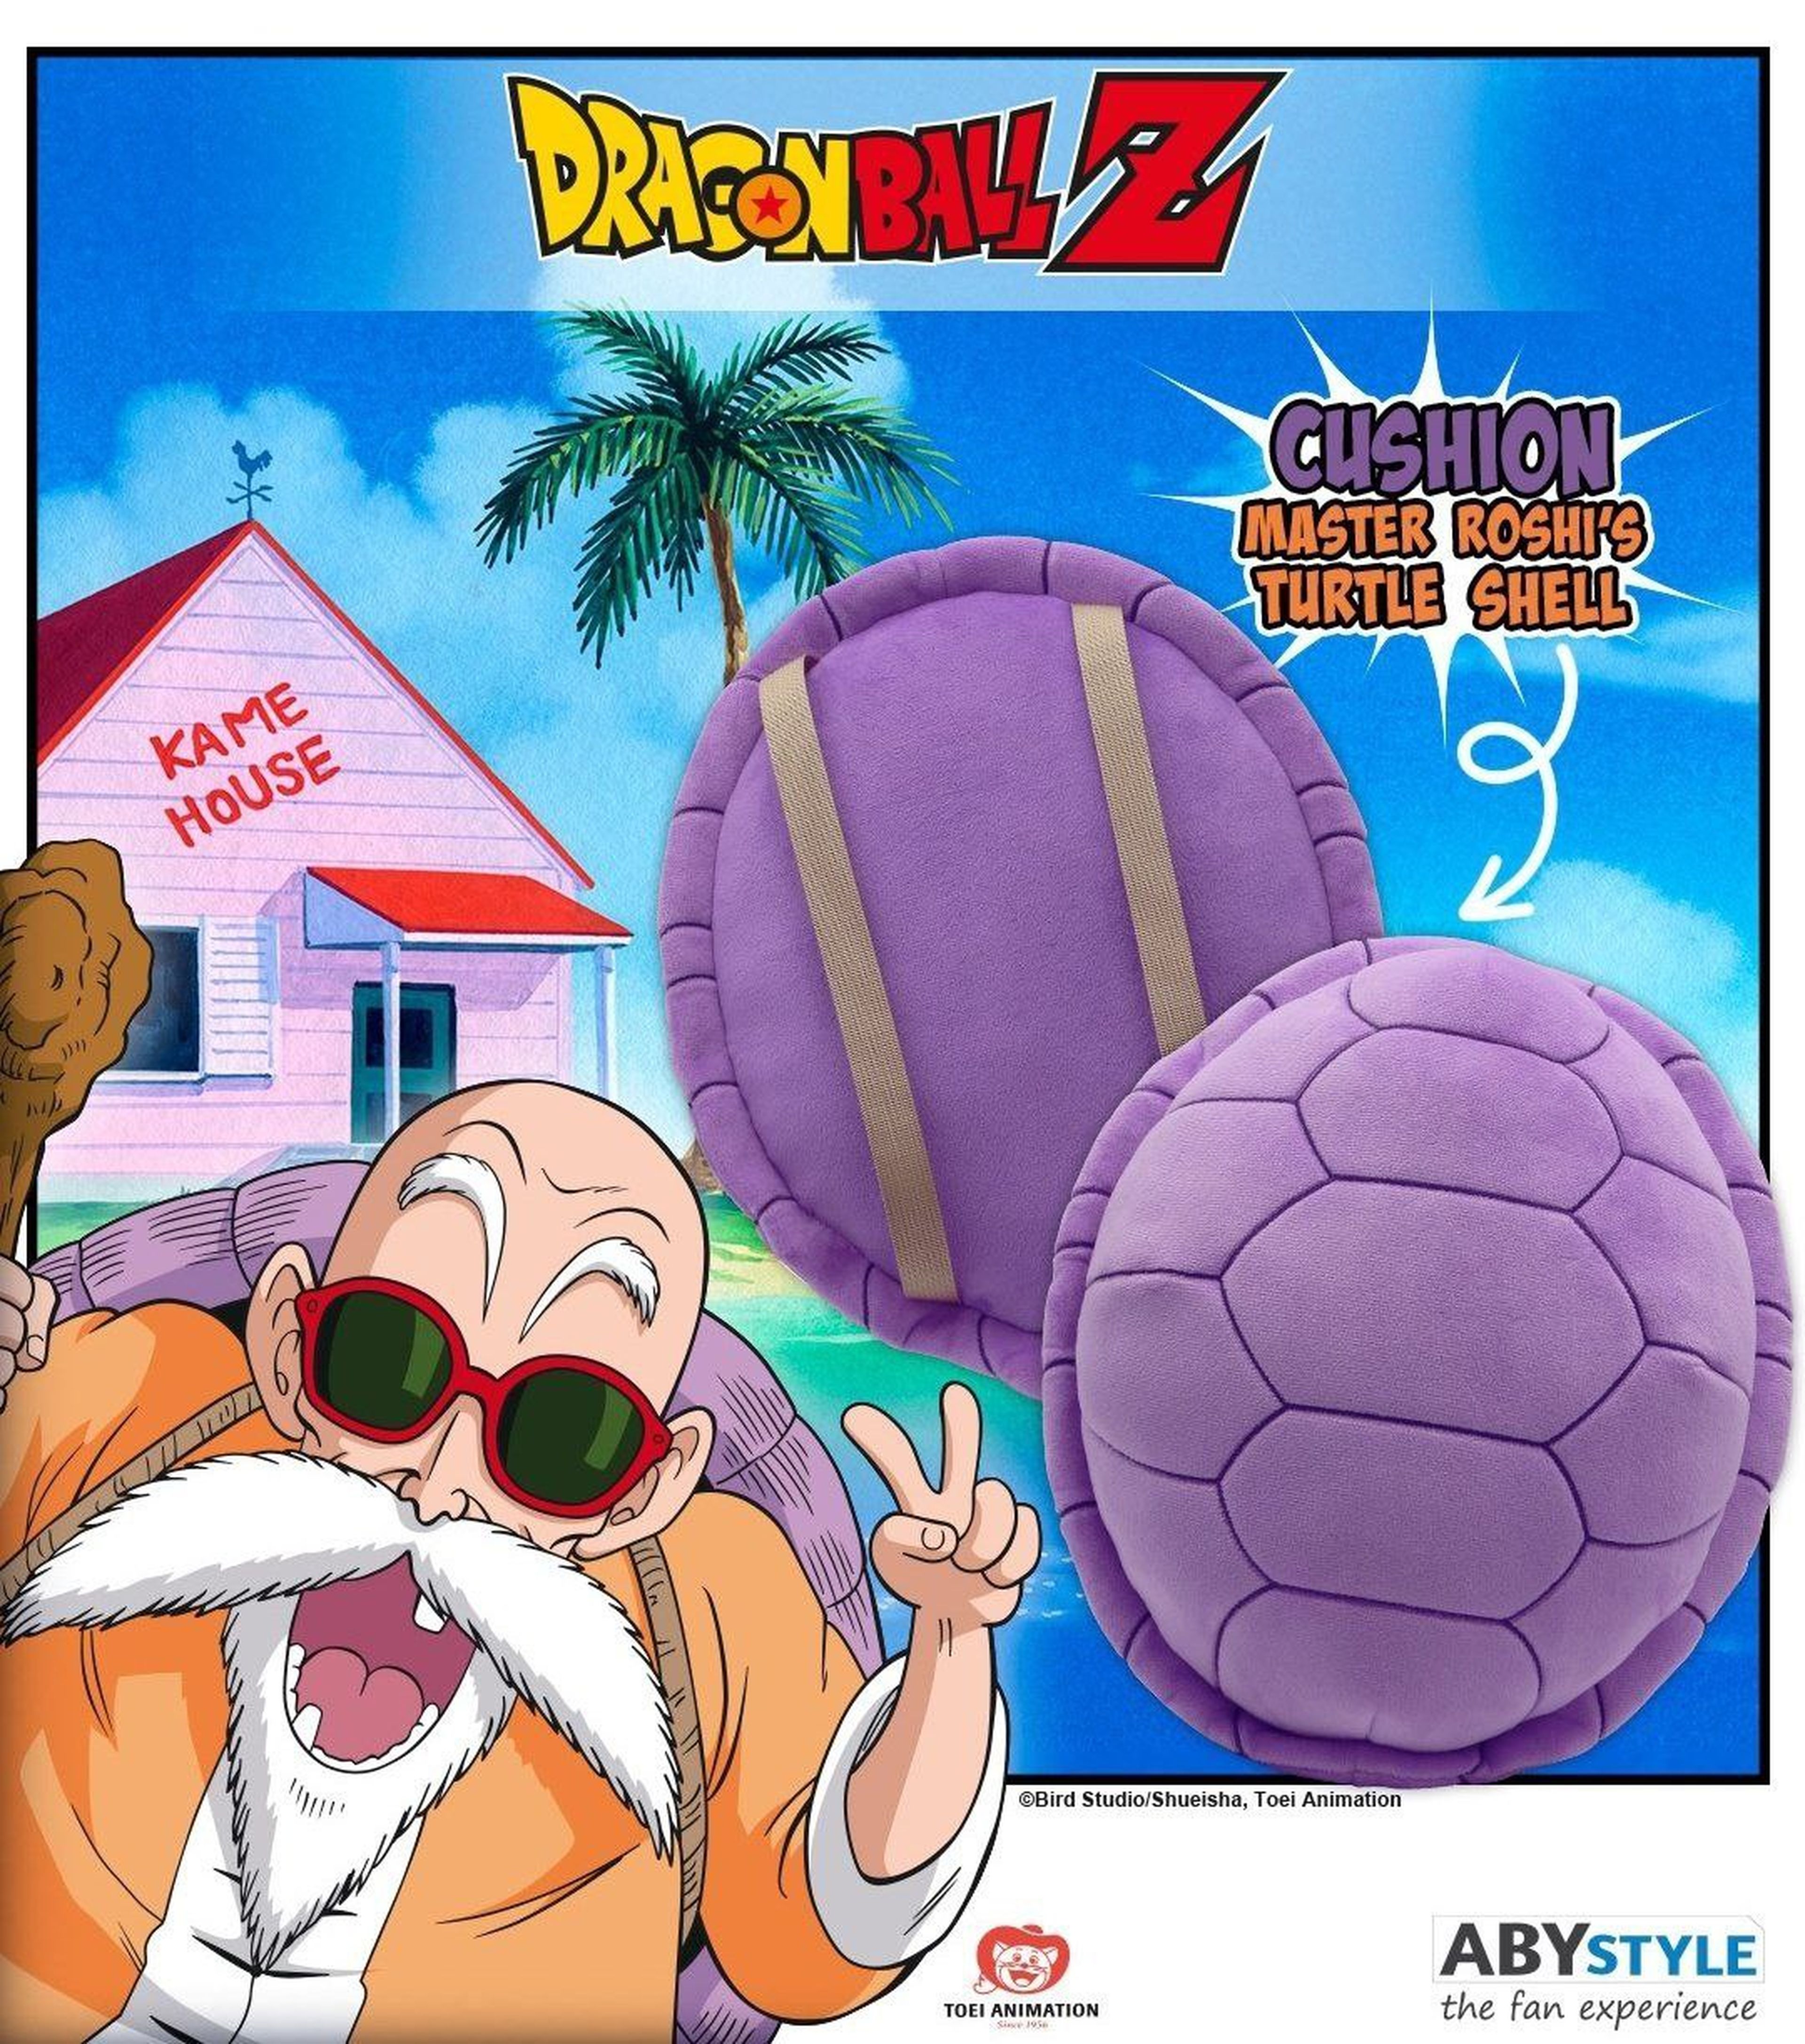 El caparazón de tortuga de Mutenroshi, el maestro de Goku en Dragon Ball, se ha lanzado al mercado de manera oficial y pesa menos que en la serie